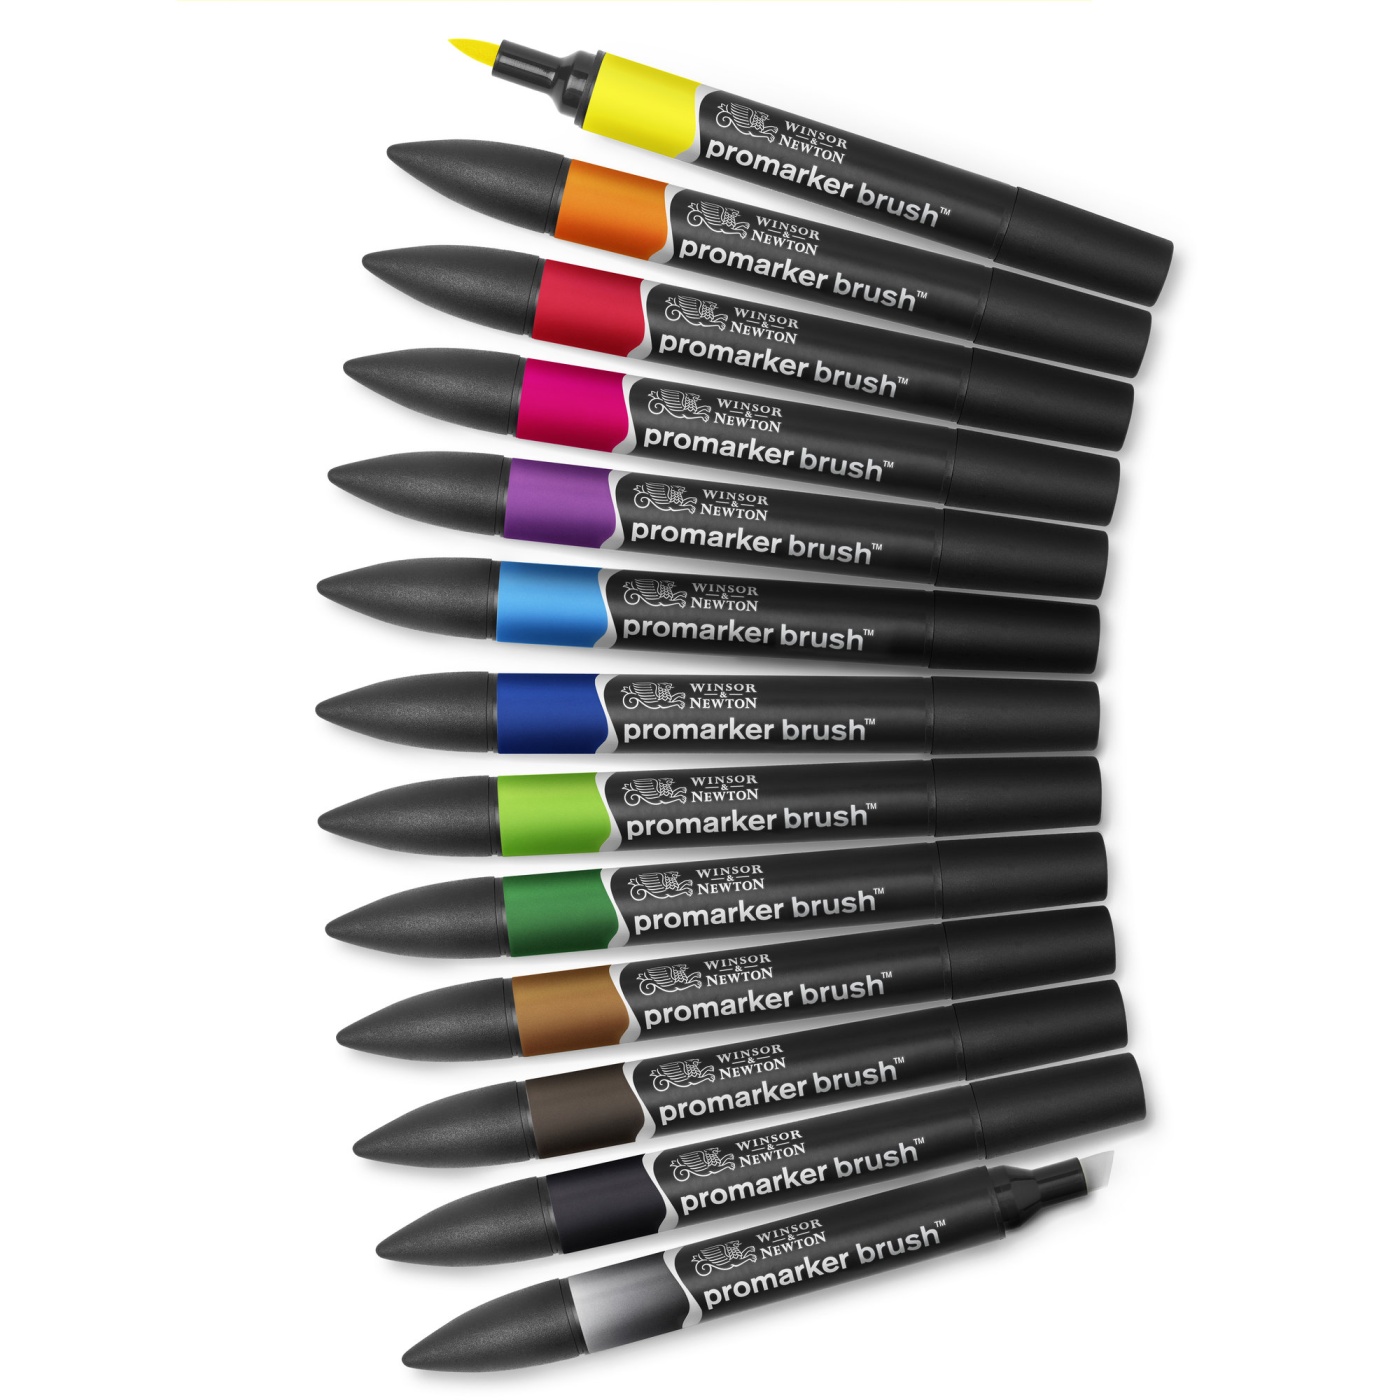 BrushMarker 12-set + blender (Set 1) in the group Pens / Artist Pens / Brush Pens at Pen Store (100557)